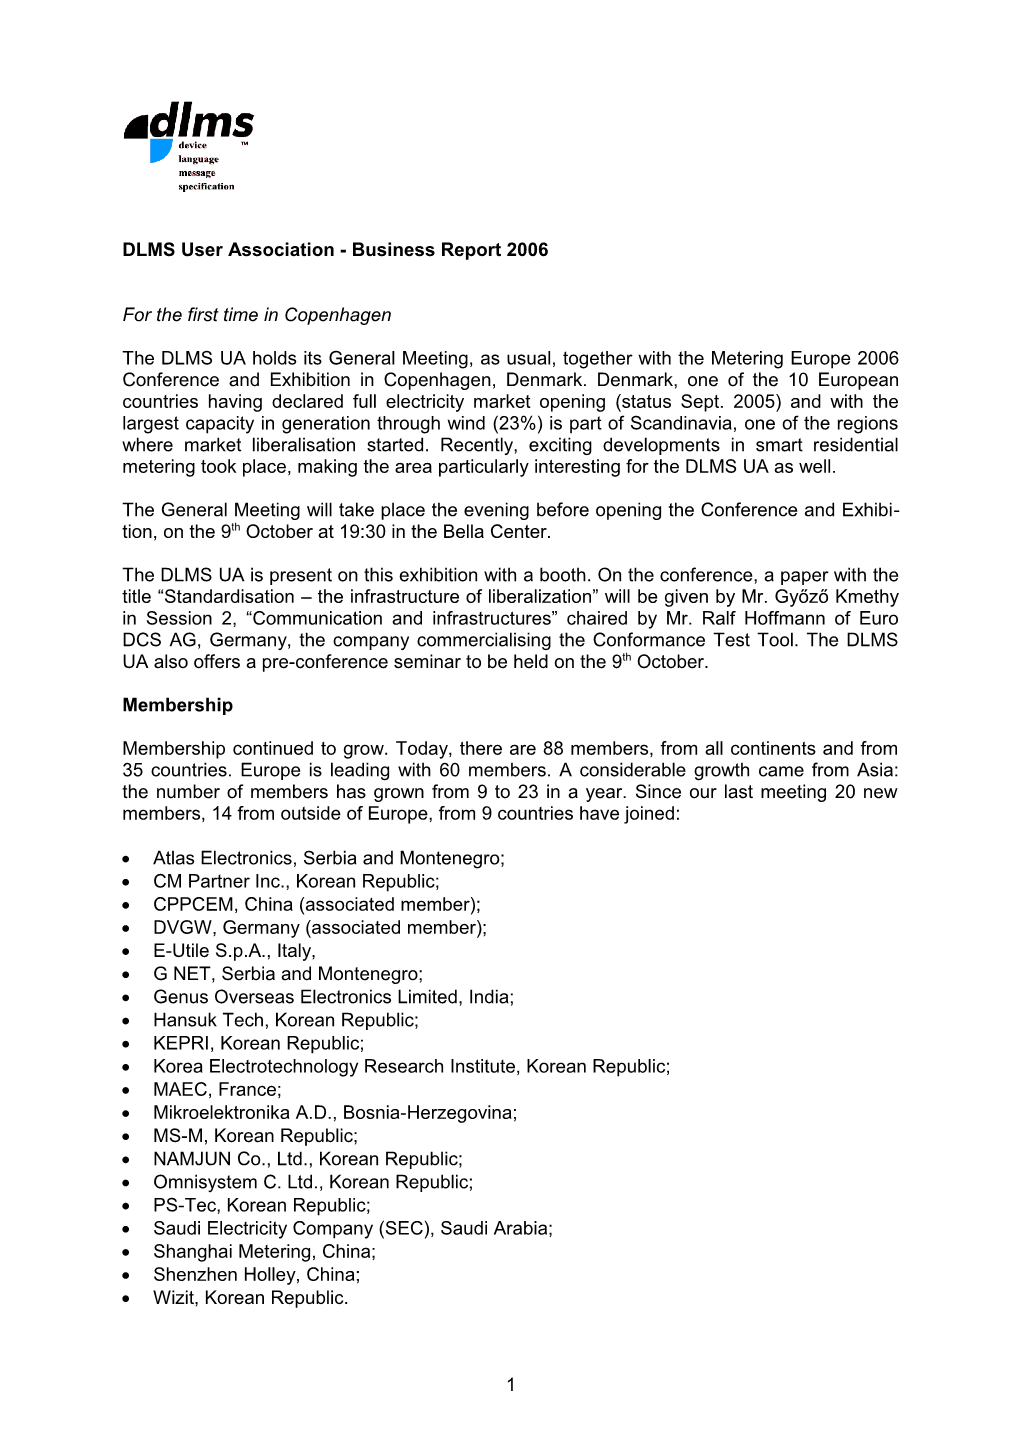 DLMS UA Business Report